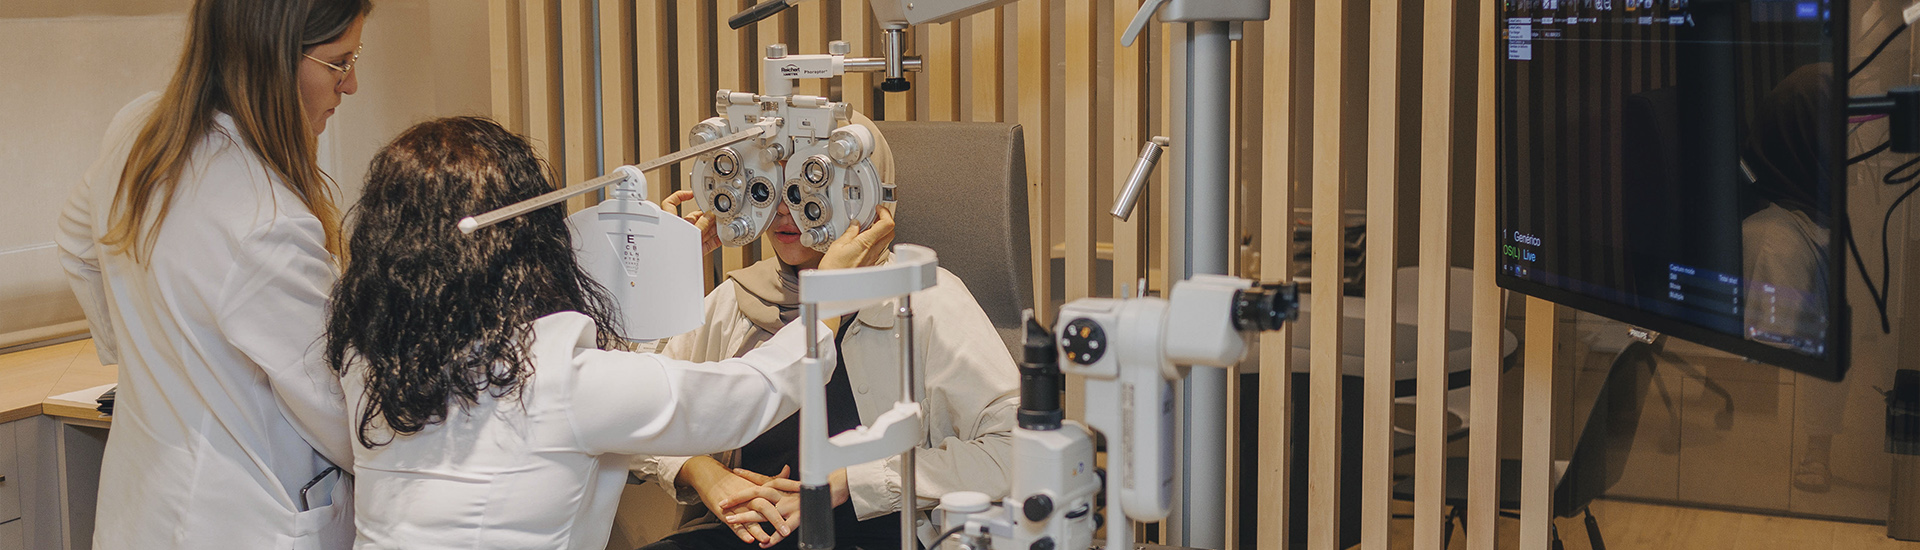 examen personalitzat optometria tecnologia avançada